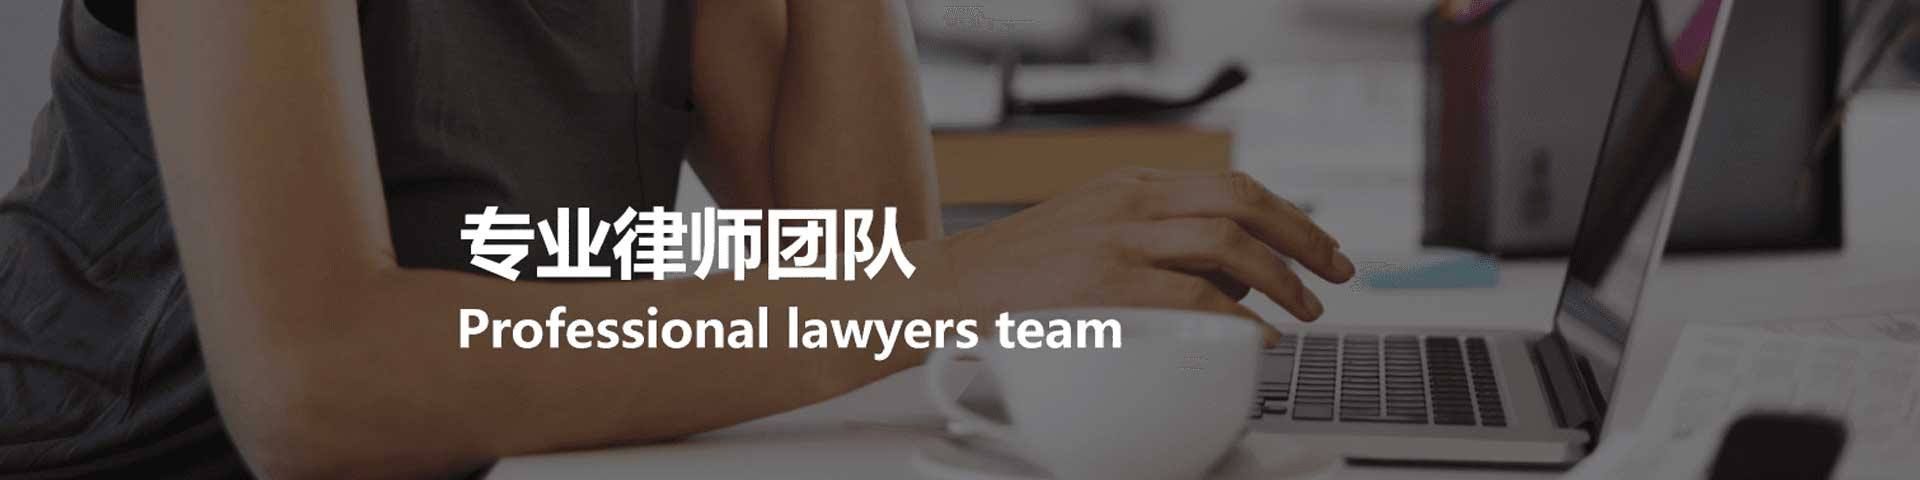 济南法律咨询服务平台为您提供正规的法律咨询、律师顾问、法律服务查询吧，覆盖于刑事、婚姻、合同等法律